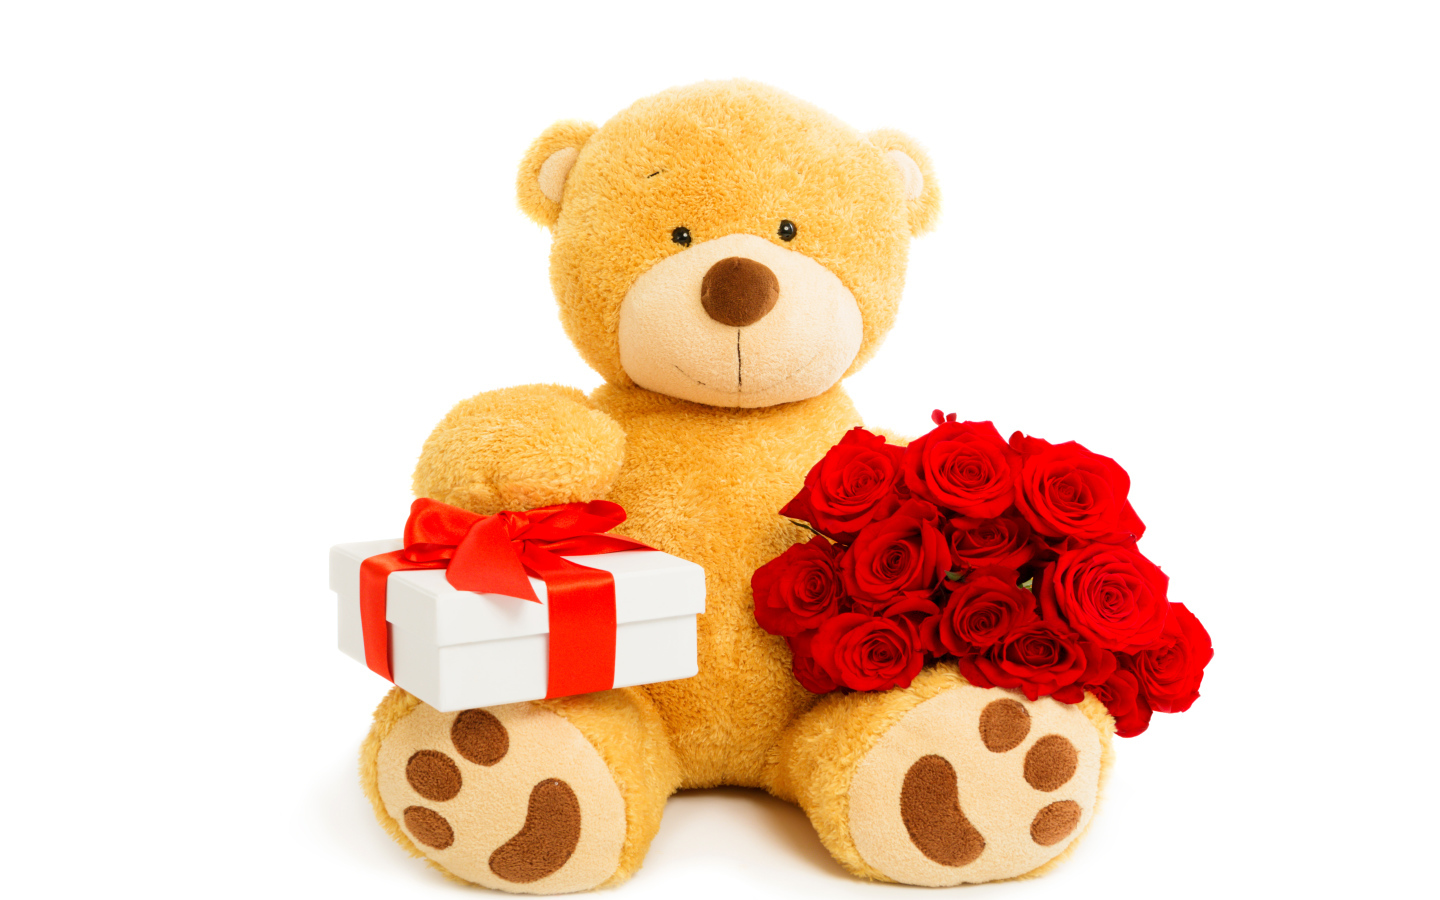 Плюшевый медведь с букетом красных роз и подарком